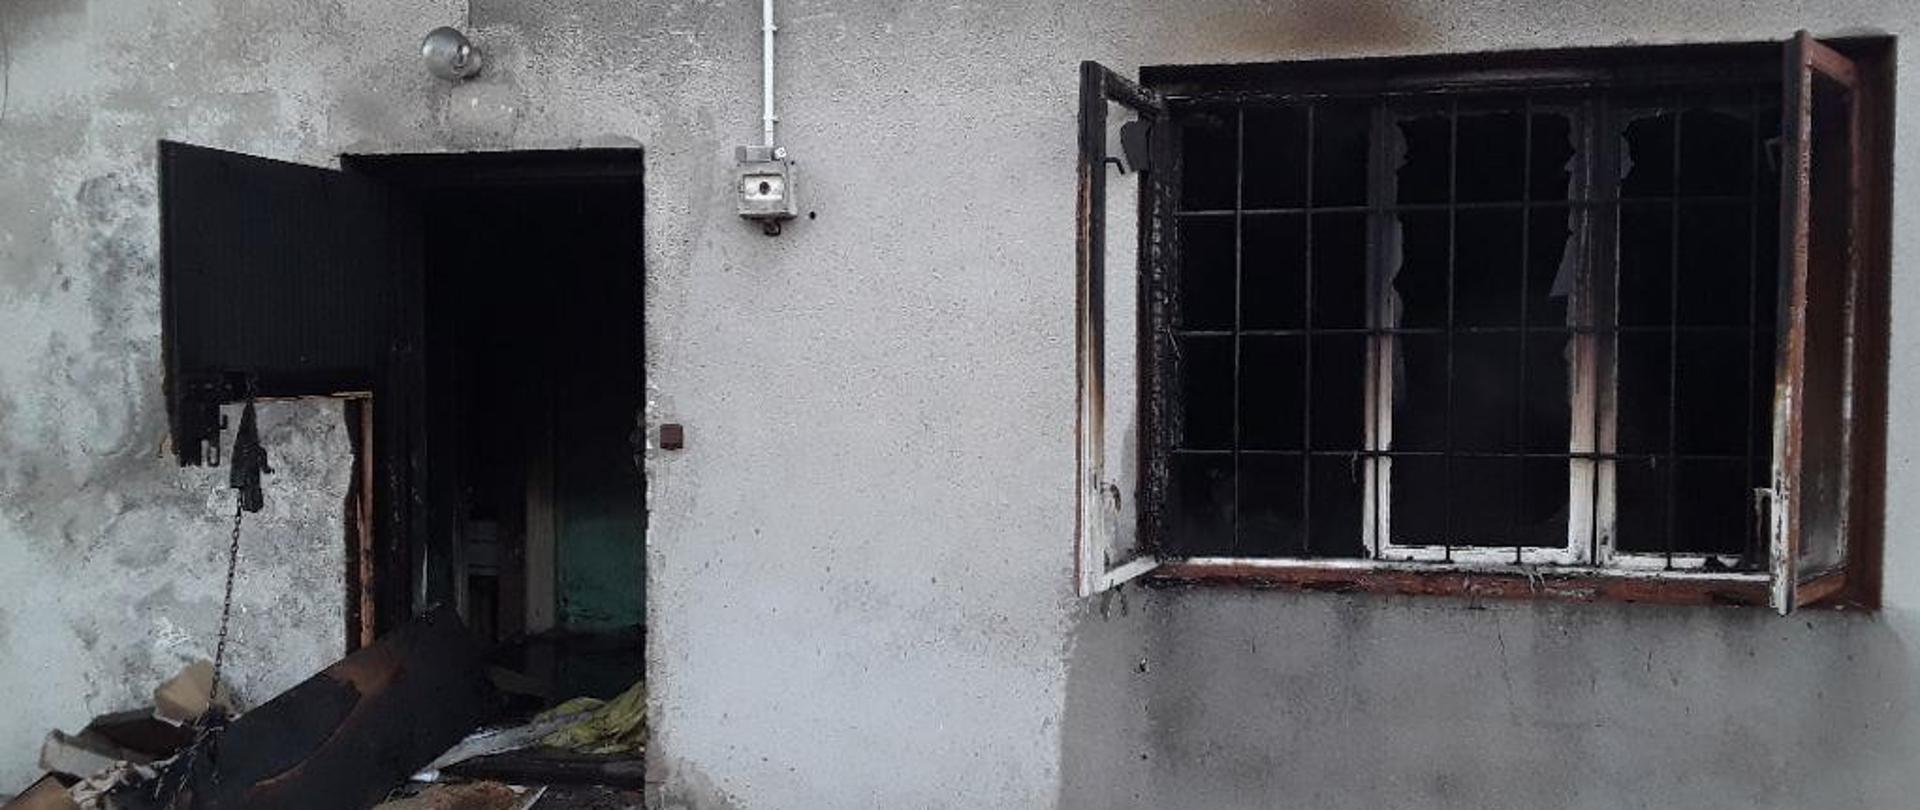 Drzwi wejściowe oraz okno budynku, w którym doszło do pożaru. W oknie budynku widoczne kraty. Drzwi zniszczone. Stolarka okienna zniszczona przez ogień.